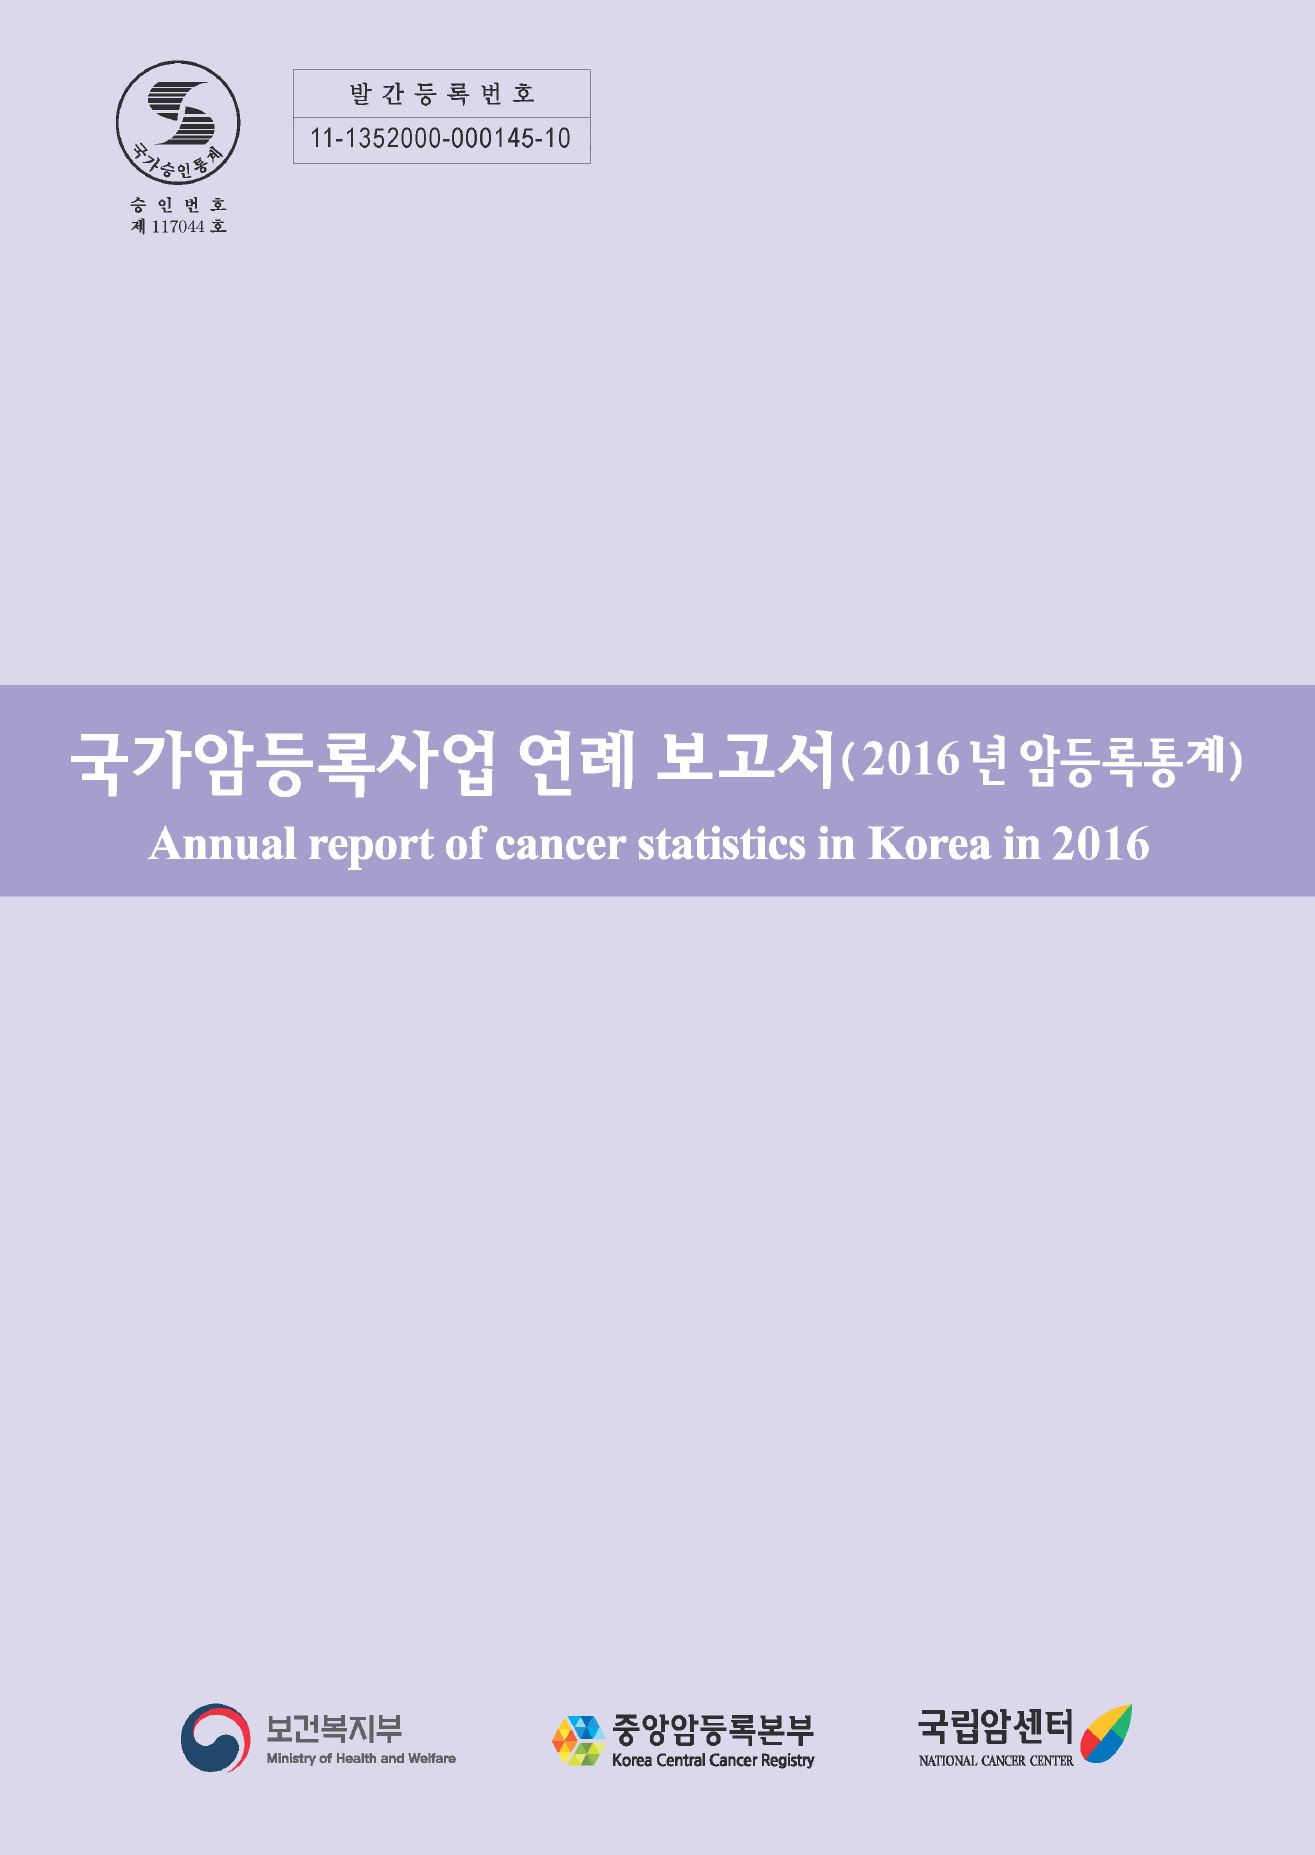 [국가승인통계 승인번호 제117044호][발간등록번호 11-1352000-000145-10] 국가암등록사업 연례 보고서(2016년 암등록통계) Annual report of cancer statistics in Korea in 2016(보건복지부/중앙암등록본부/국립암센터)